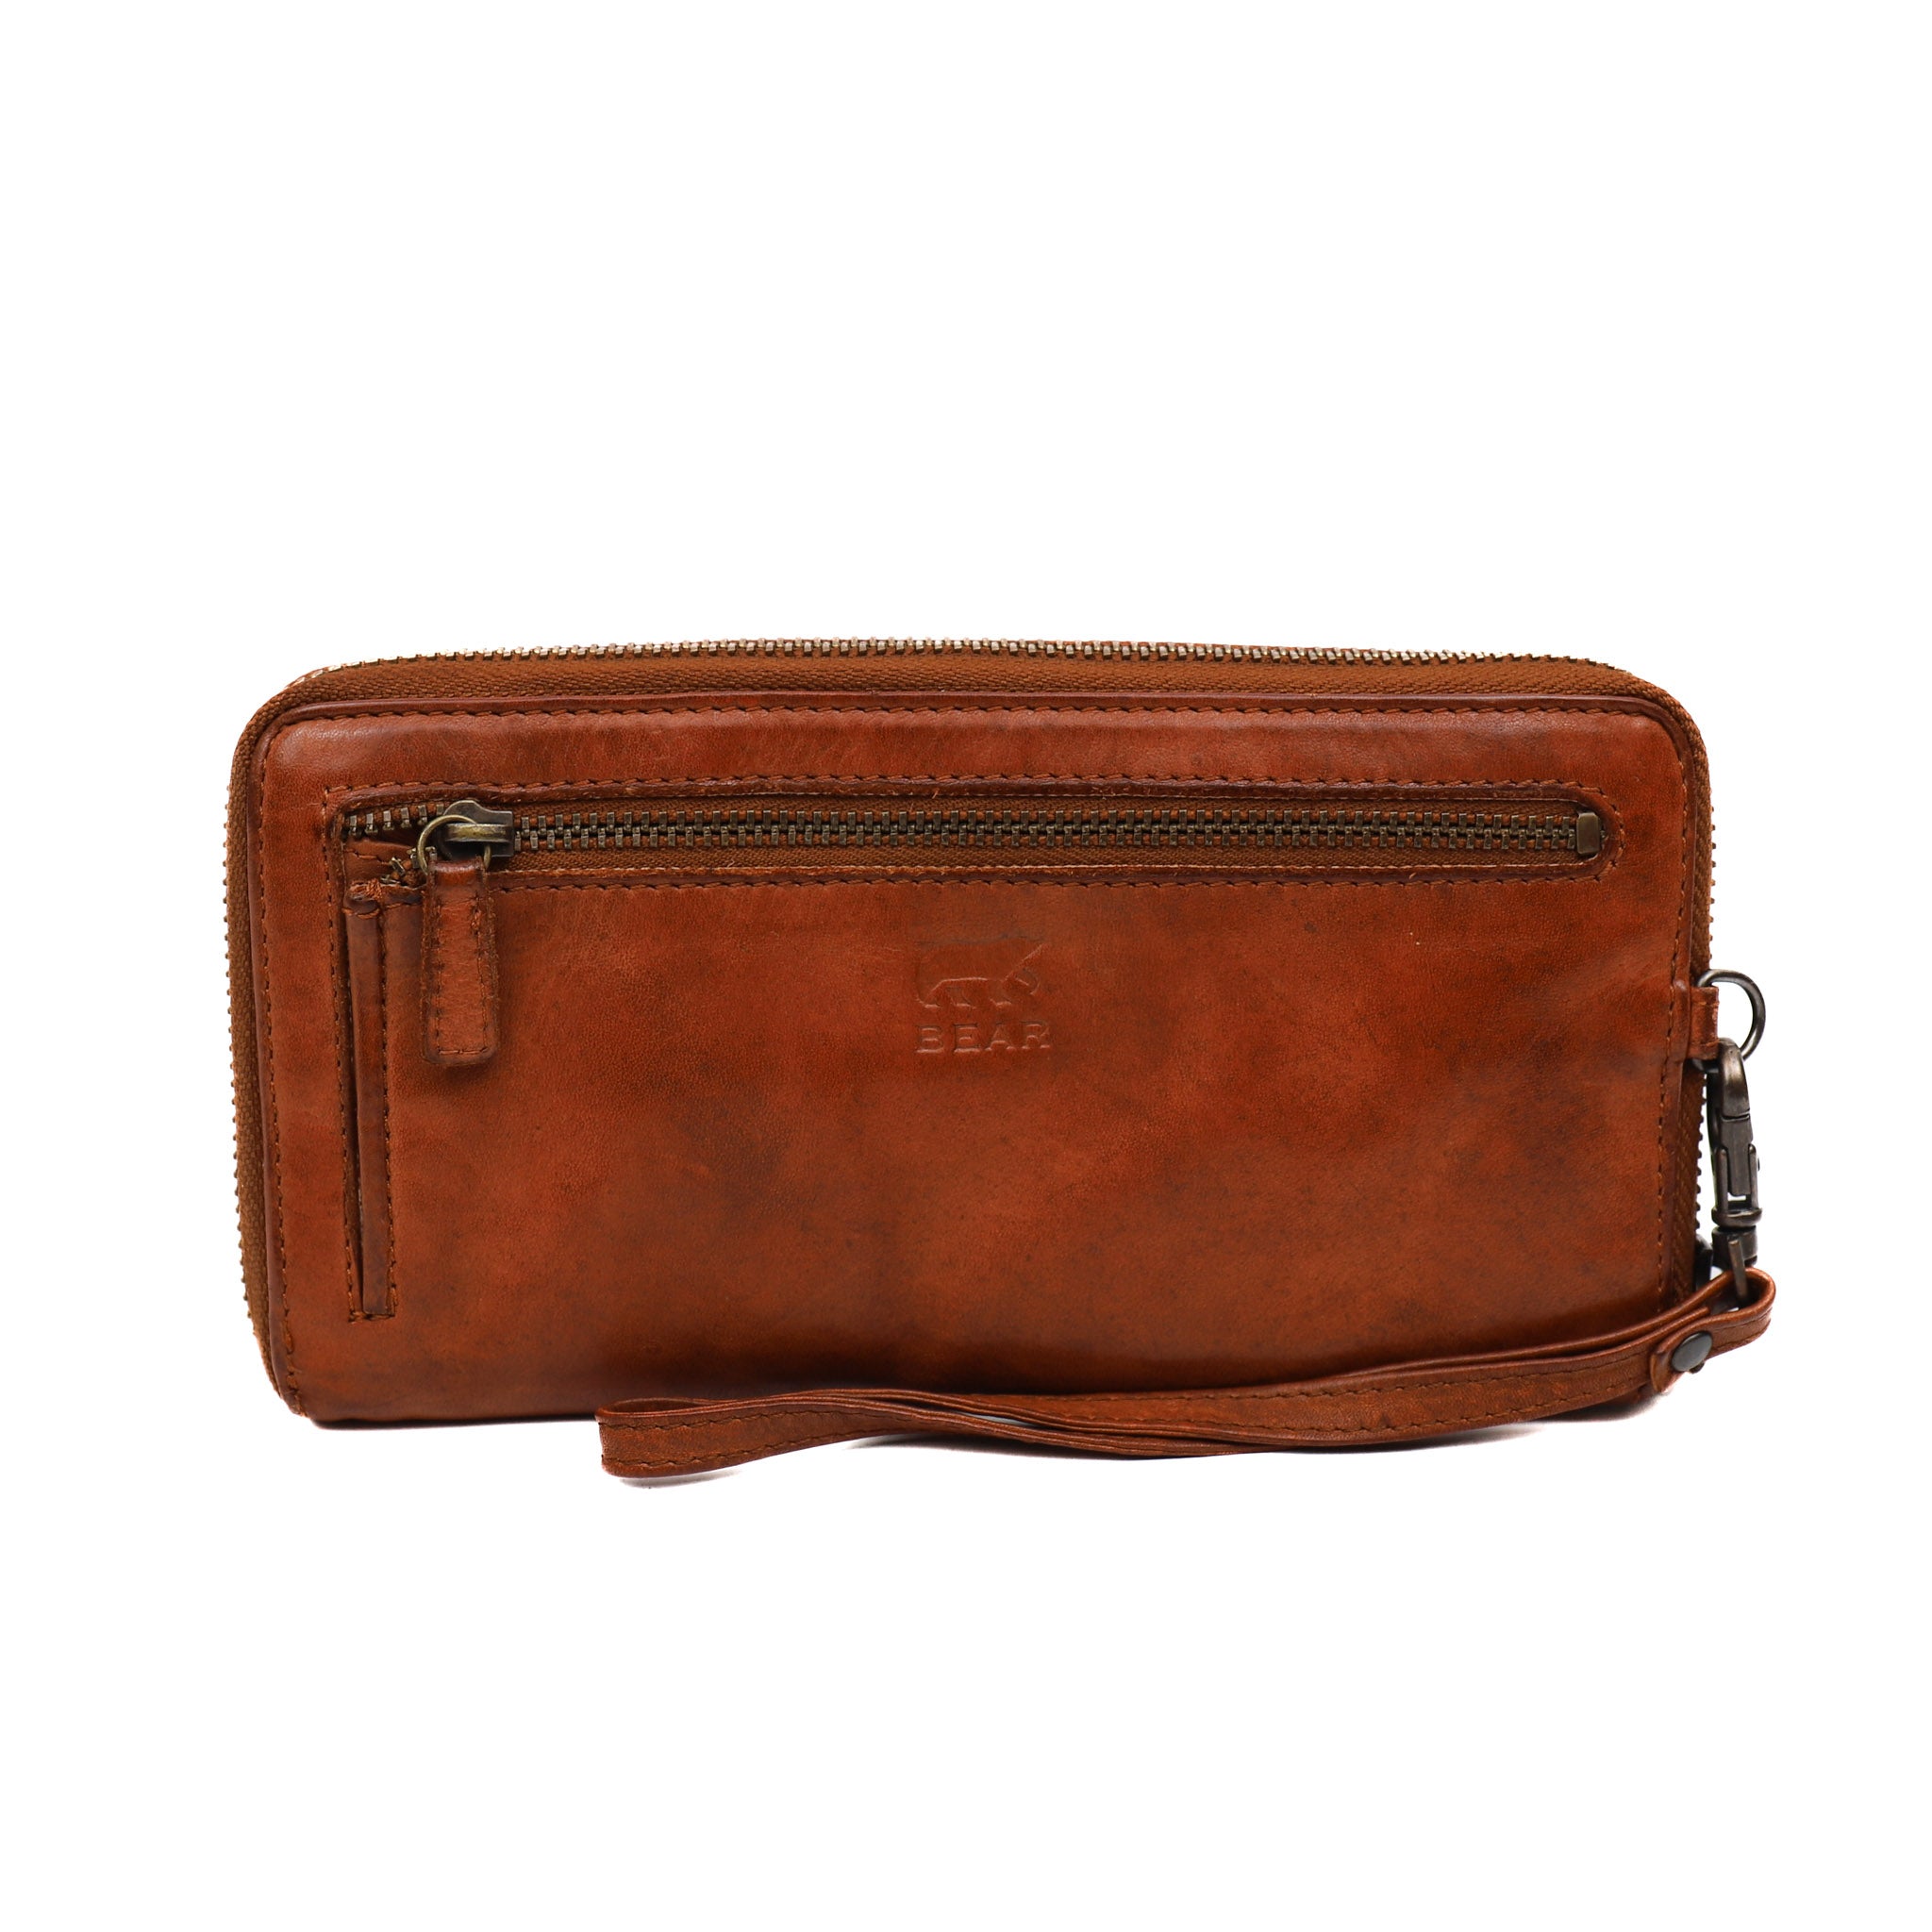 Zipper wallet 'Isa' cognac - CL 14851